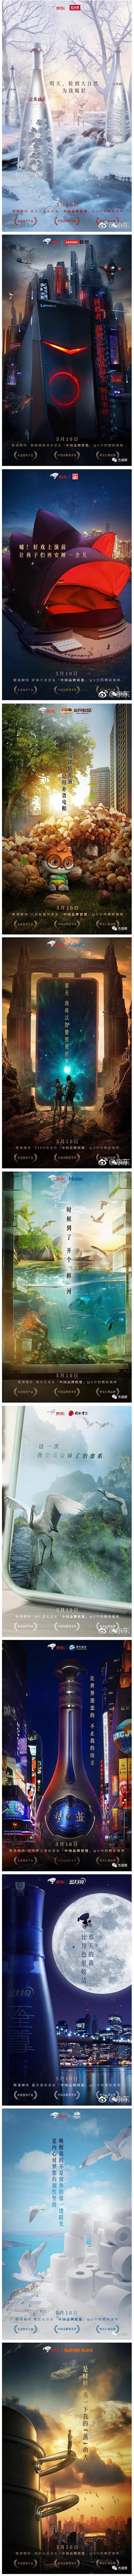 京东联合中国品牌创意合成海报